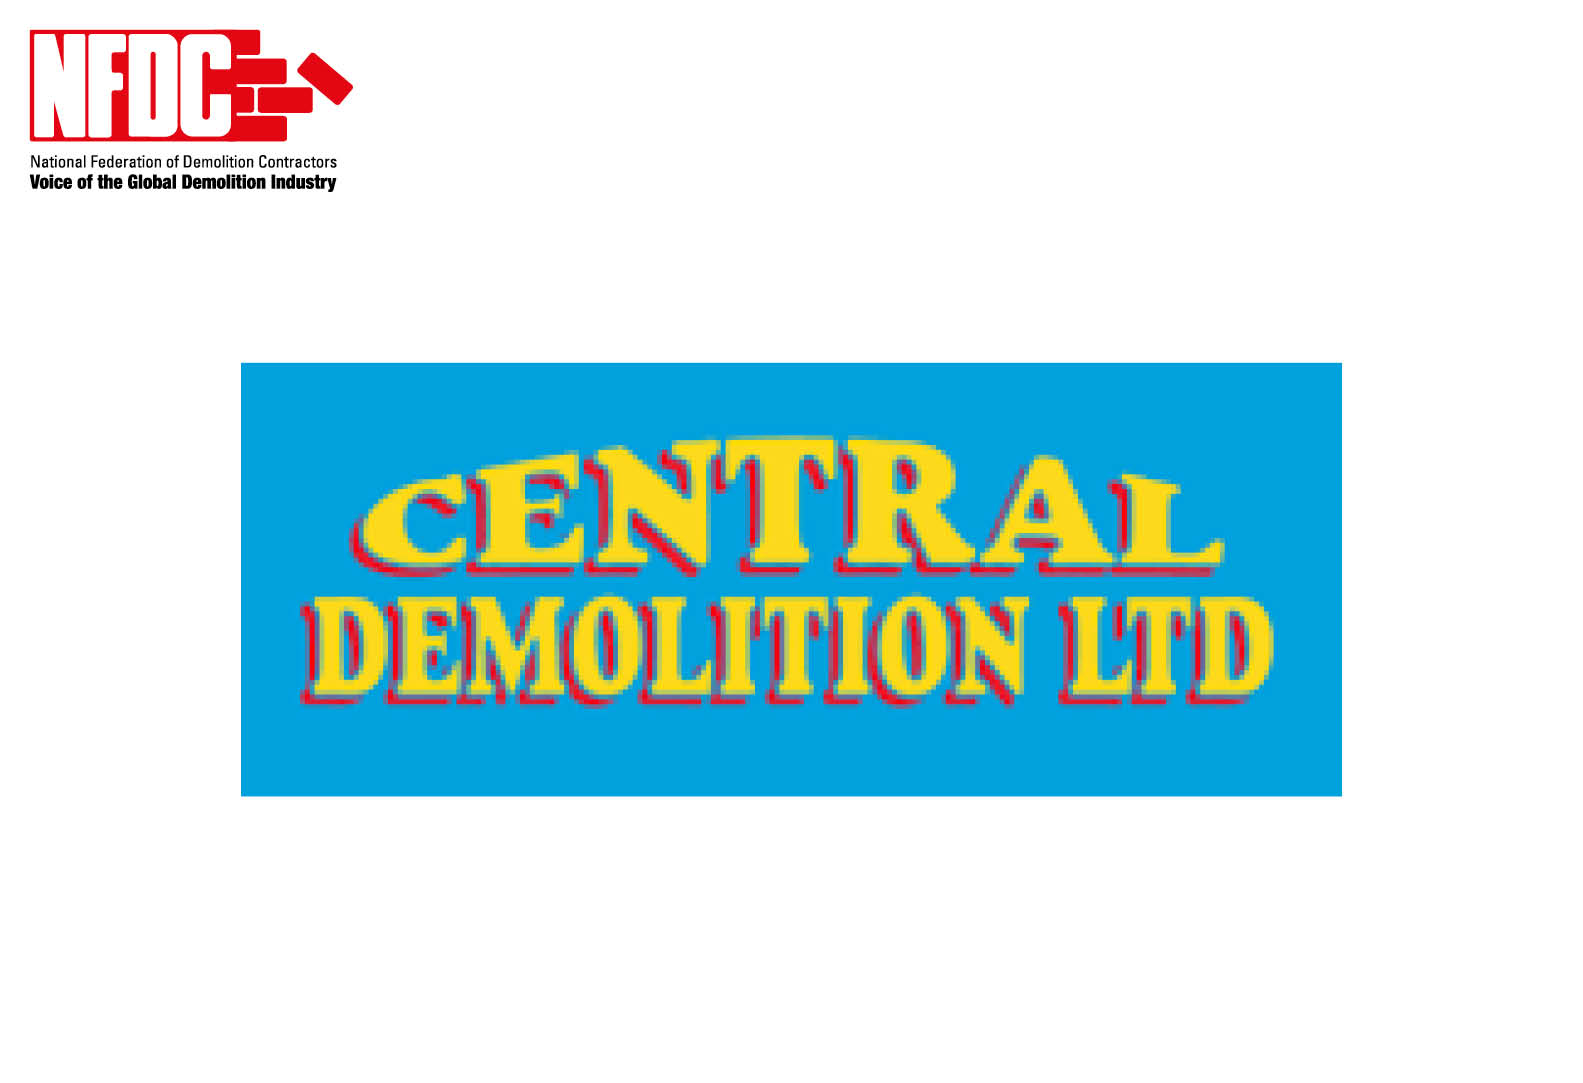 Central Demolition Ltd